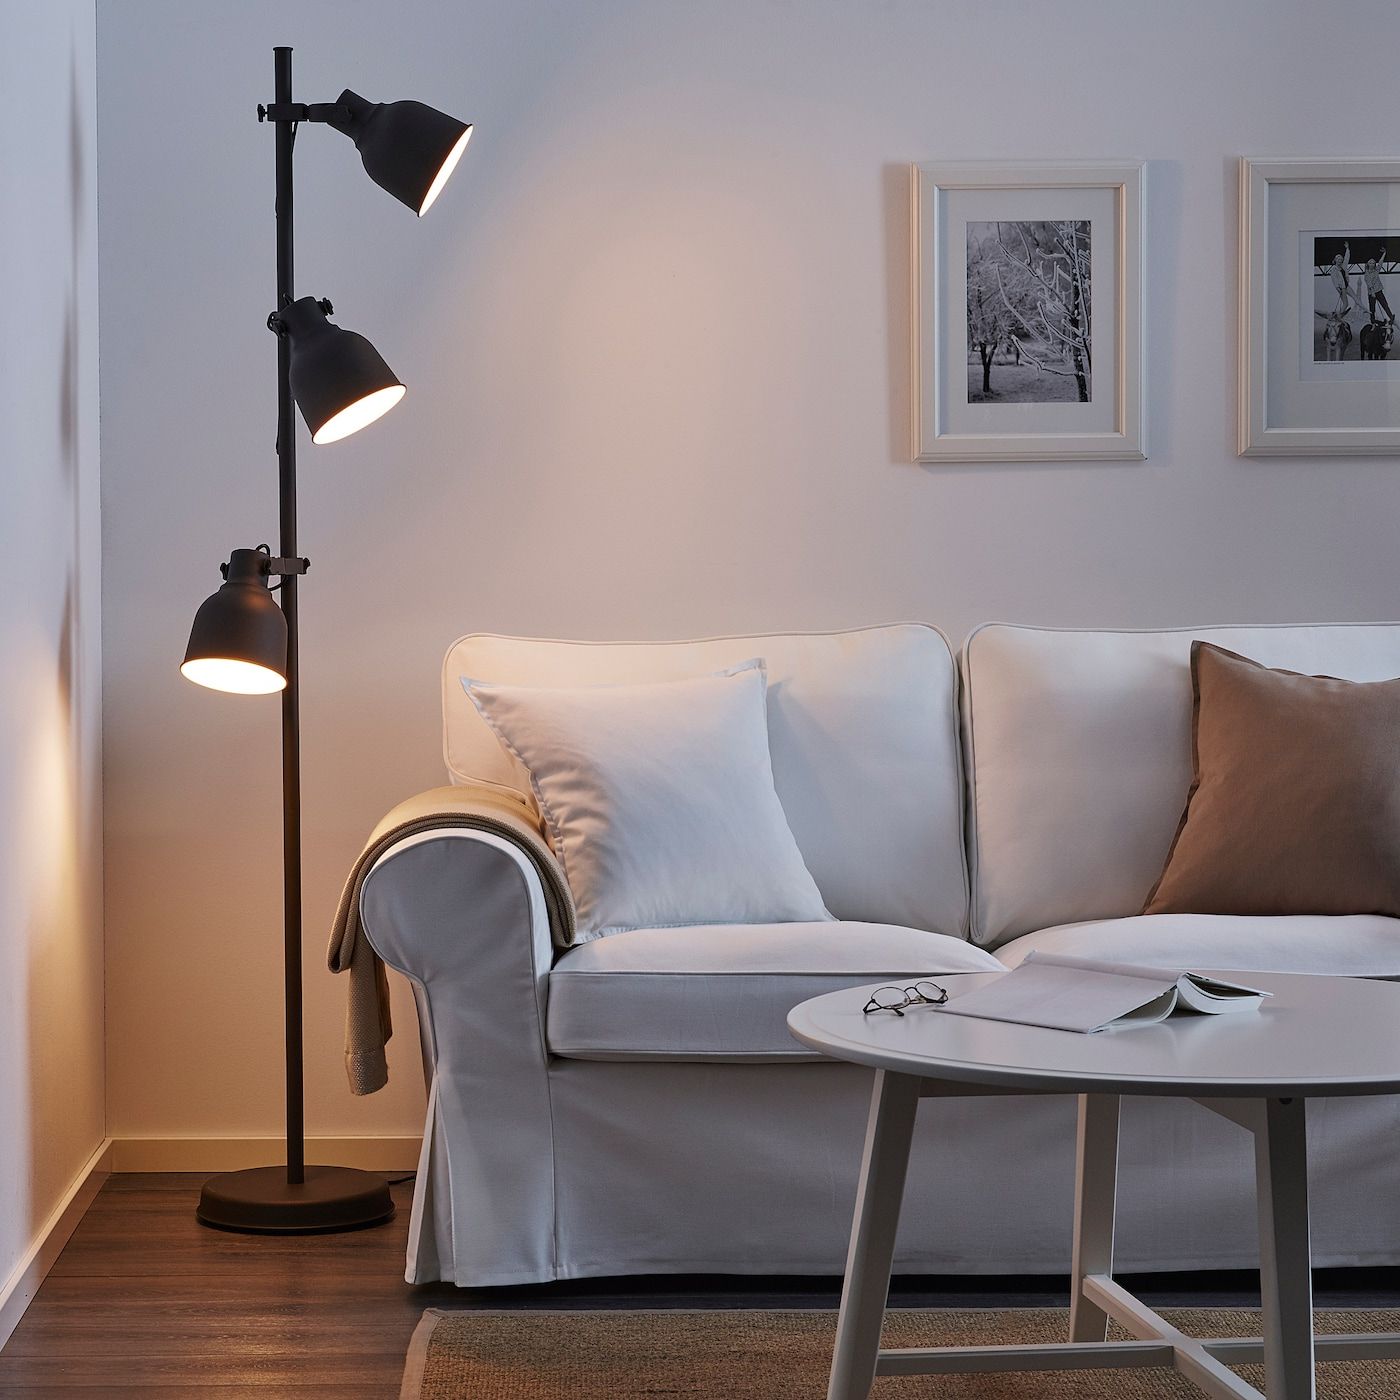 2019 Hektar Dark Grey, Floor Lamp With 3 Spot – Ikea For 3 Tier Floor Lamps (View 15 of 15)